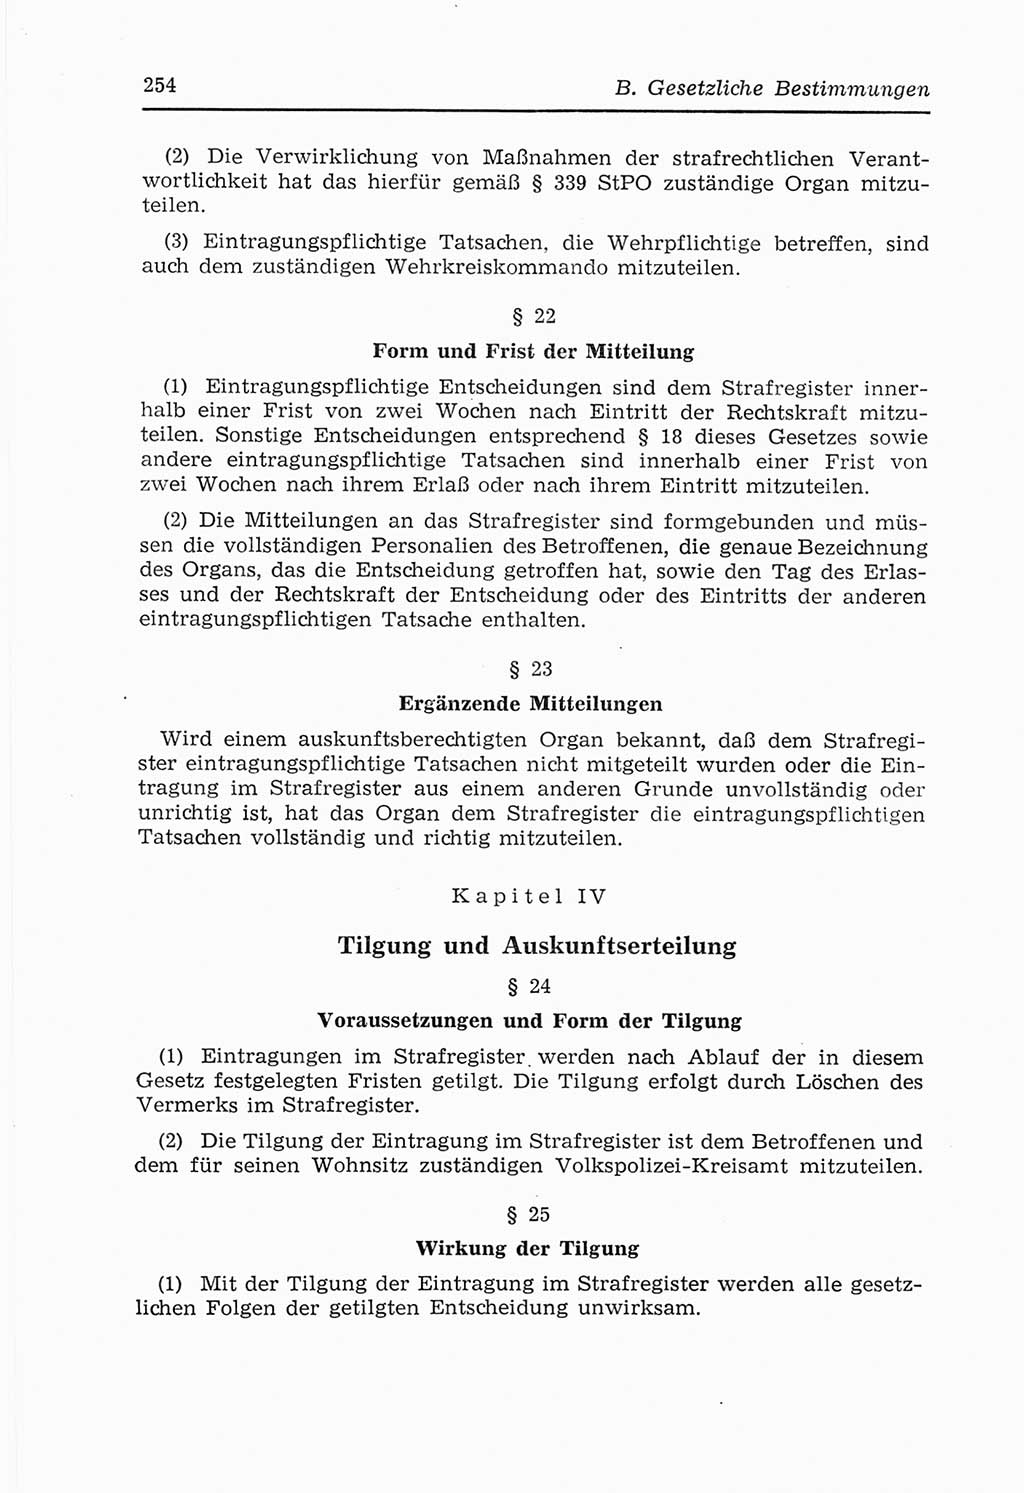 Strafvollzugs- und Wiedereingliederungsgesetz (SVWG) der Deutschen Demokratischen Republik (DDR) 1968, Seite 254 (SVWG DDR 1968, S. 254)